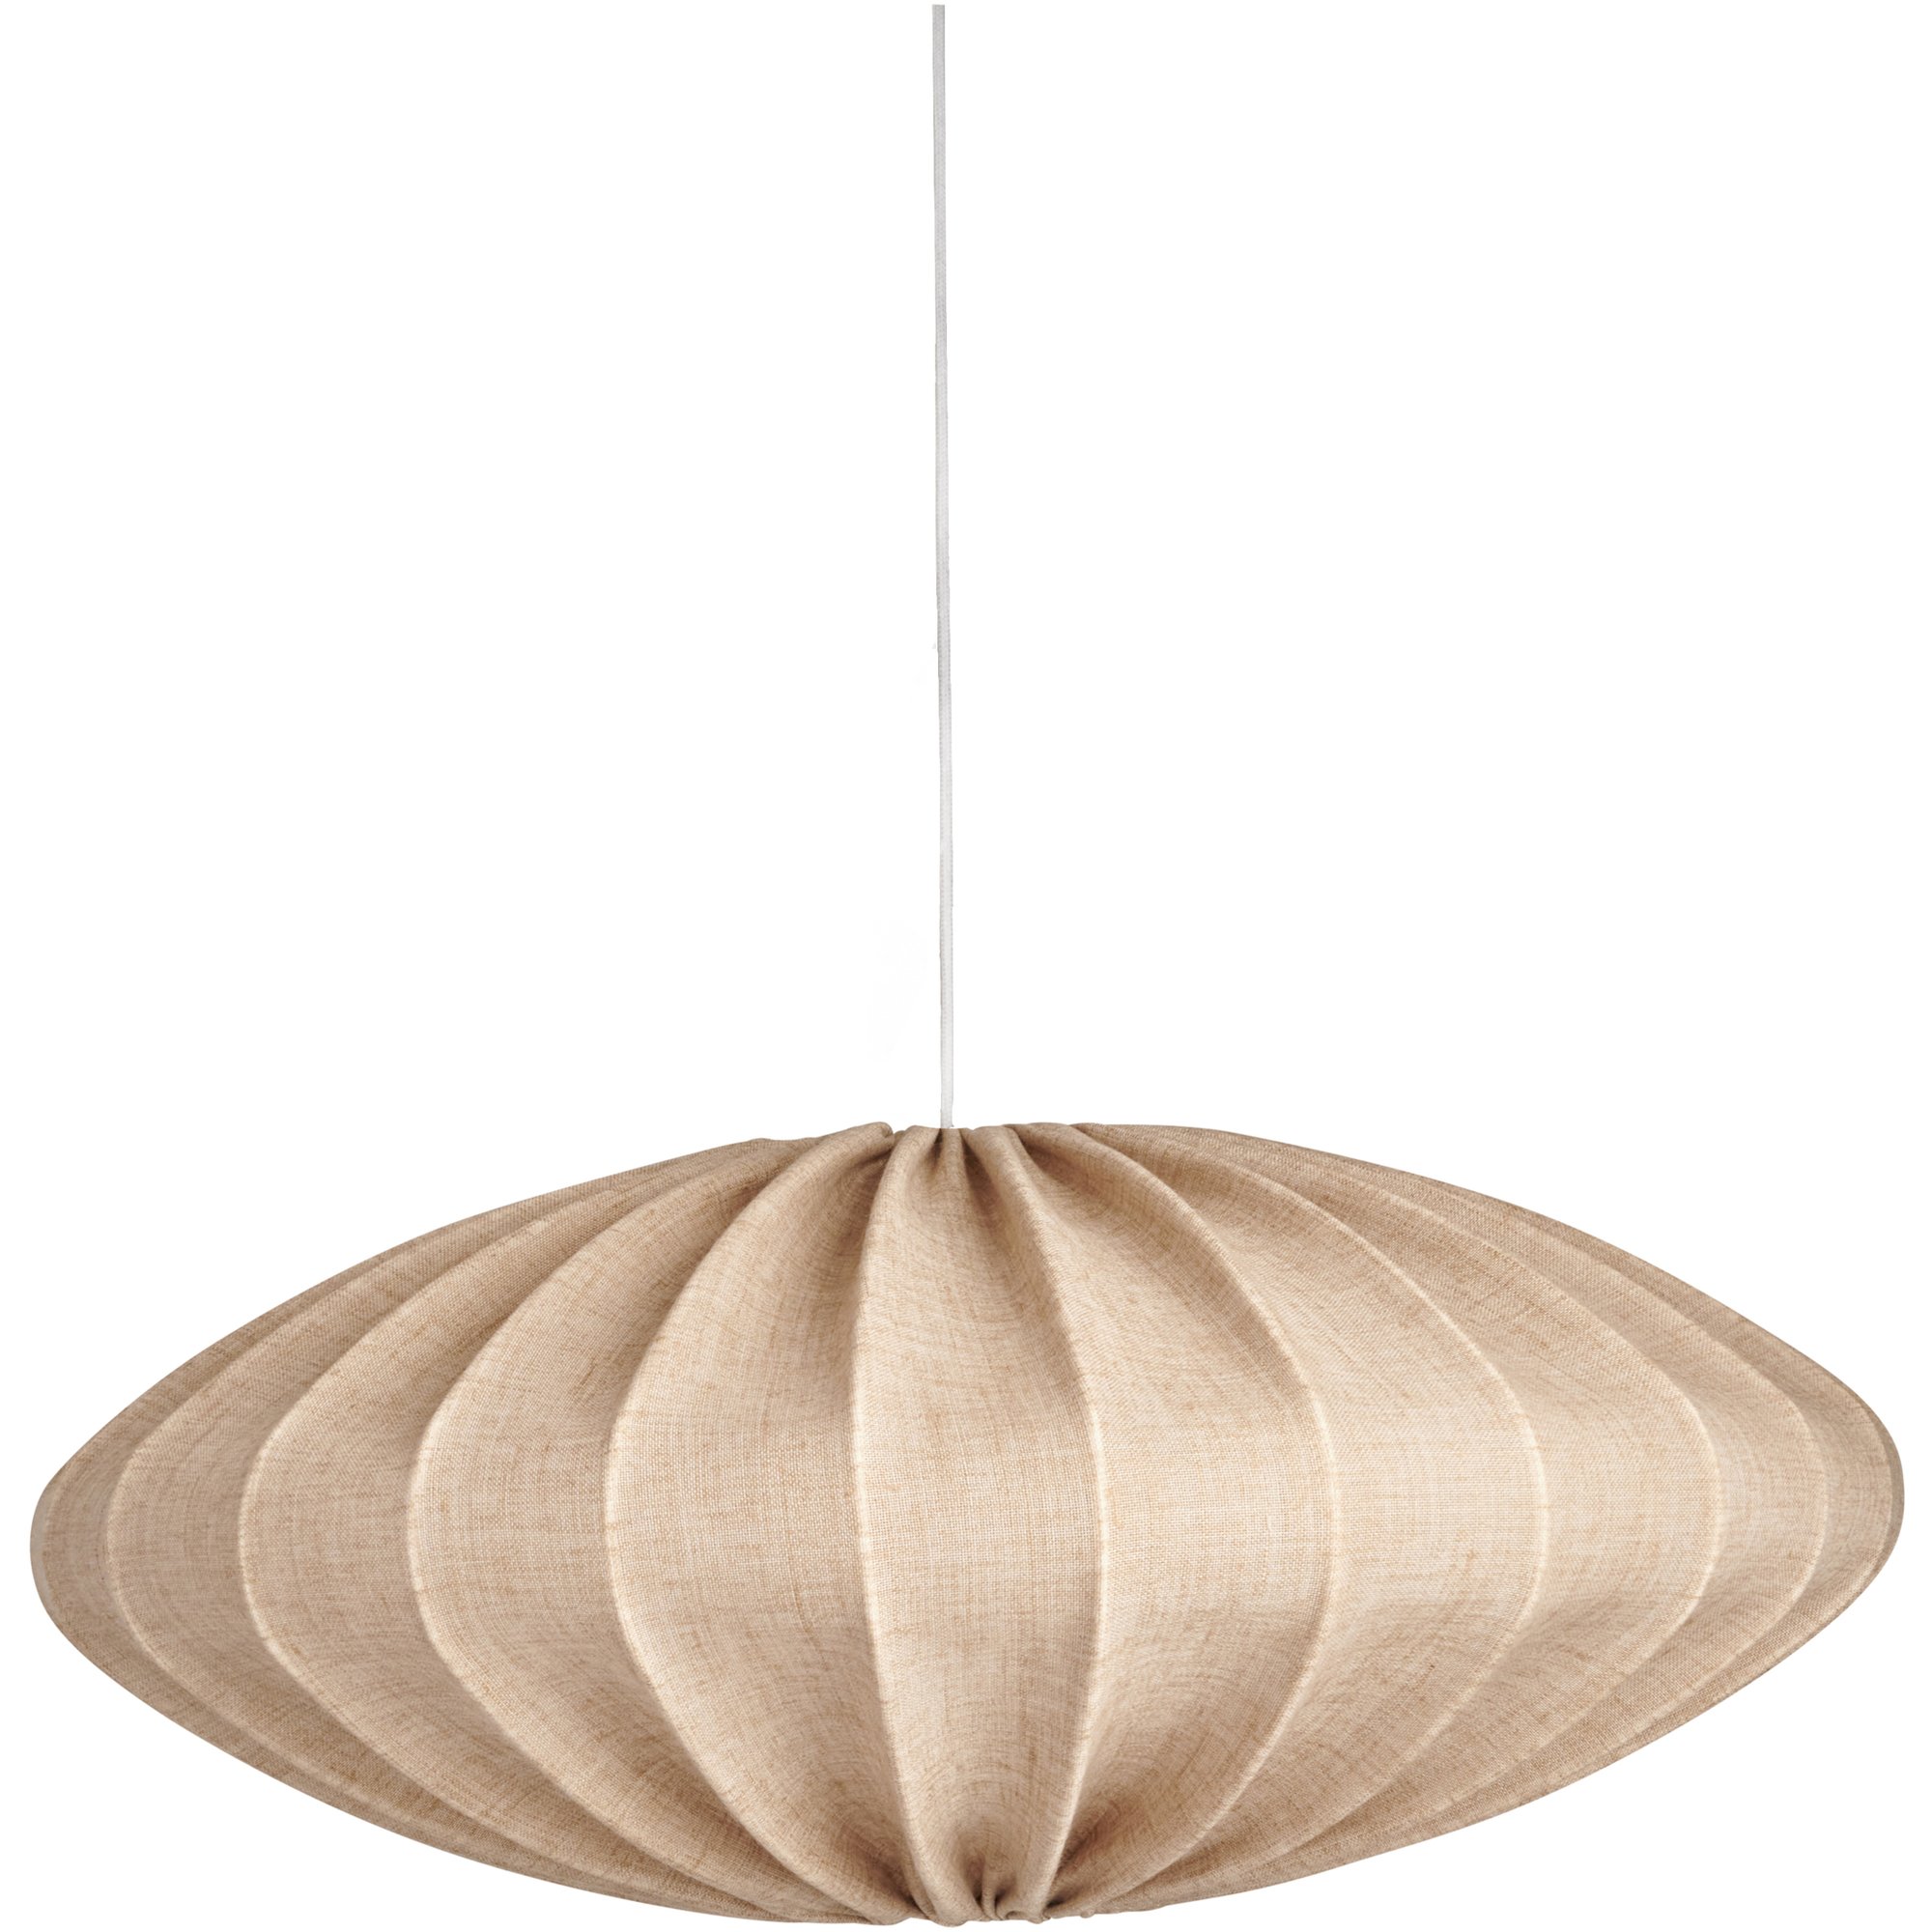 Watt & Veke Ellipse loftslampe, 65 cm, linned, sand